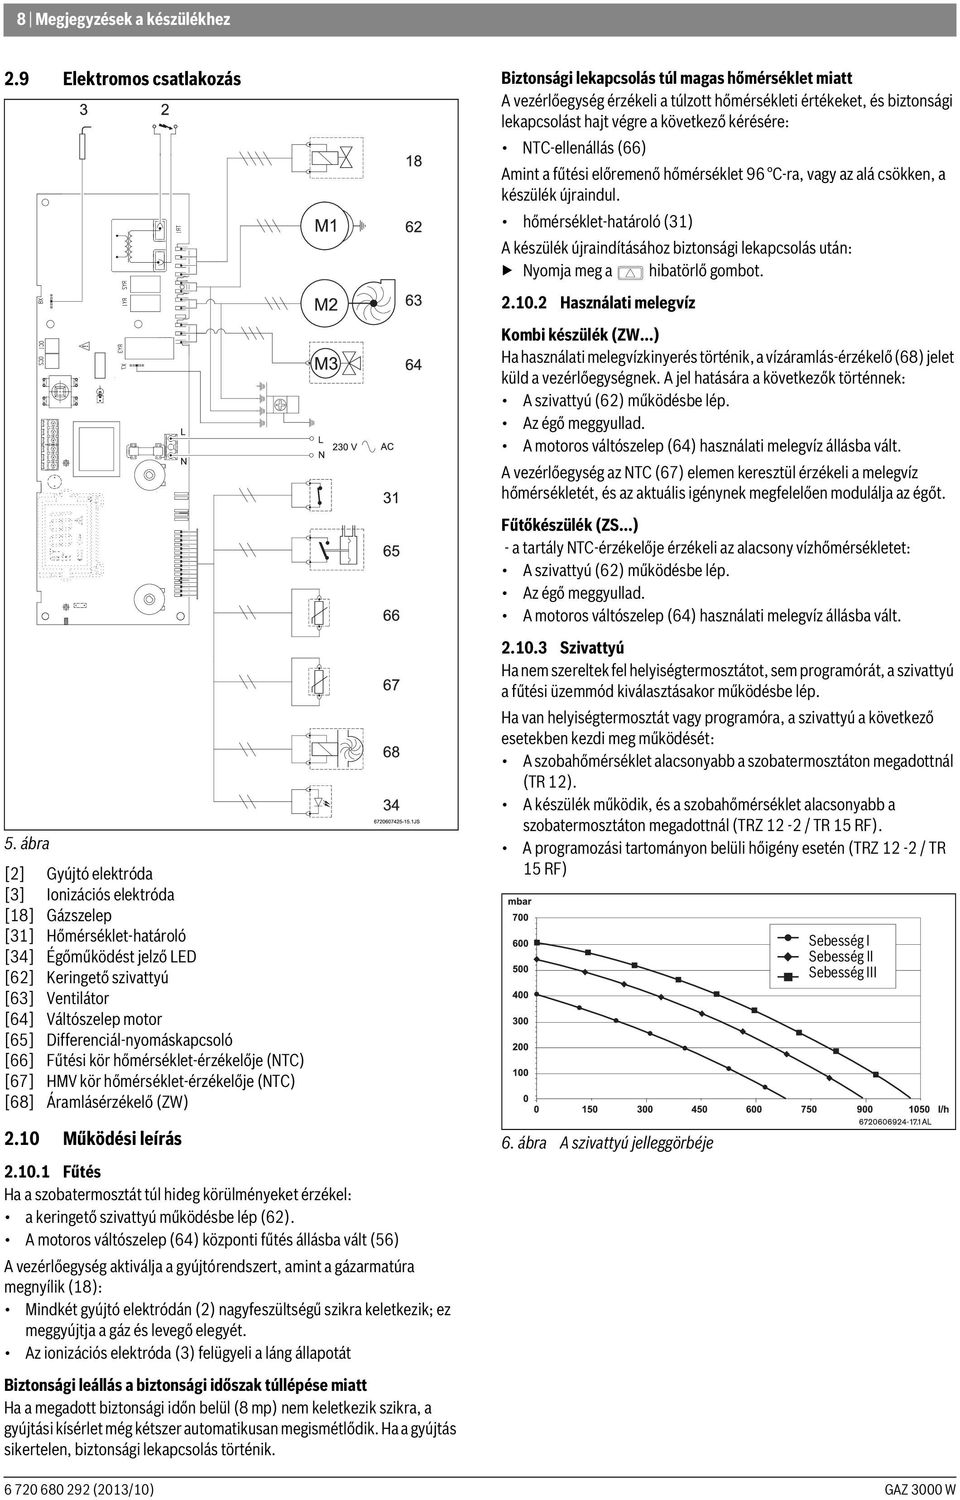 Differenciál-nyomáskapcsoló [66] Fűtési kör hőmérséklet-érzékelője (NTC) [67] HMV kör hőmérséklet-érzékelője (NTC) [68] Áramlásérzékelő (ZW) 2.10 